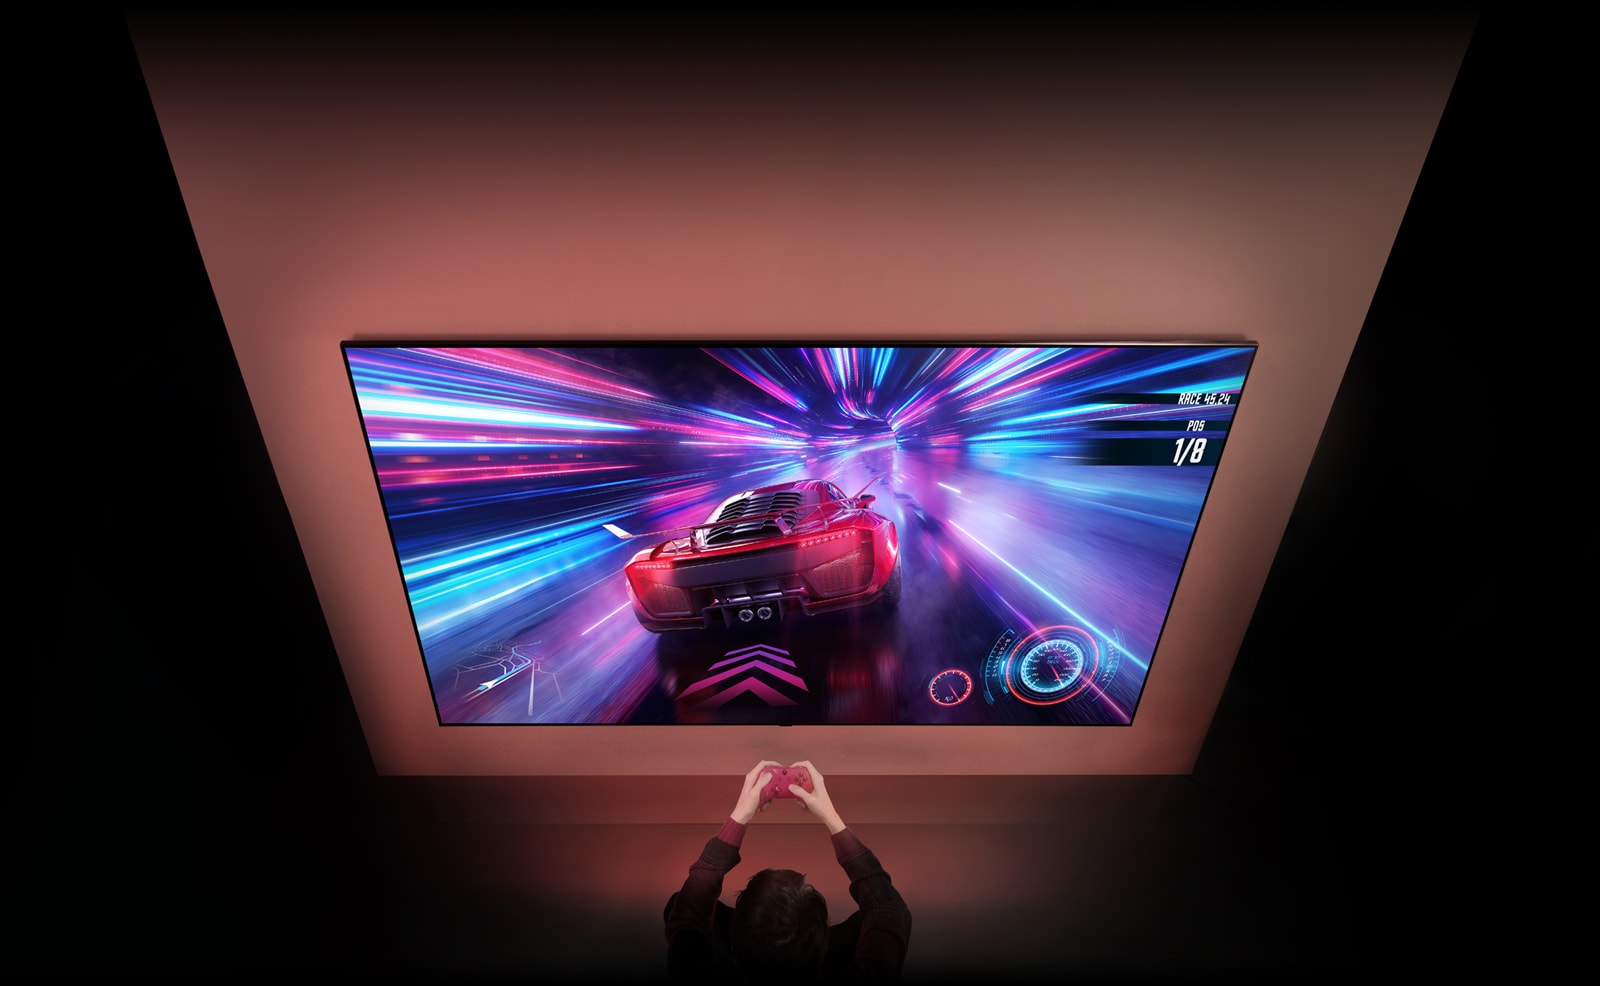 Der er et stort tv på væggen, og på skærmen vises et bilspil, der er i gang. Foran tv'et står en spilcontroller i hænderne på en person, der er fokuseret på spillet.